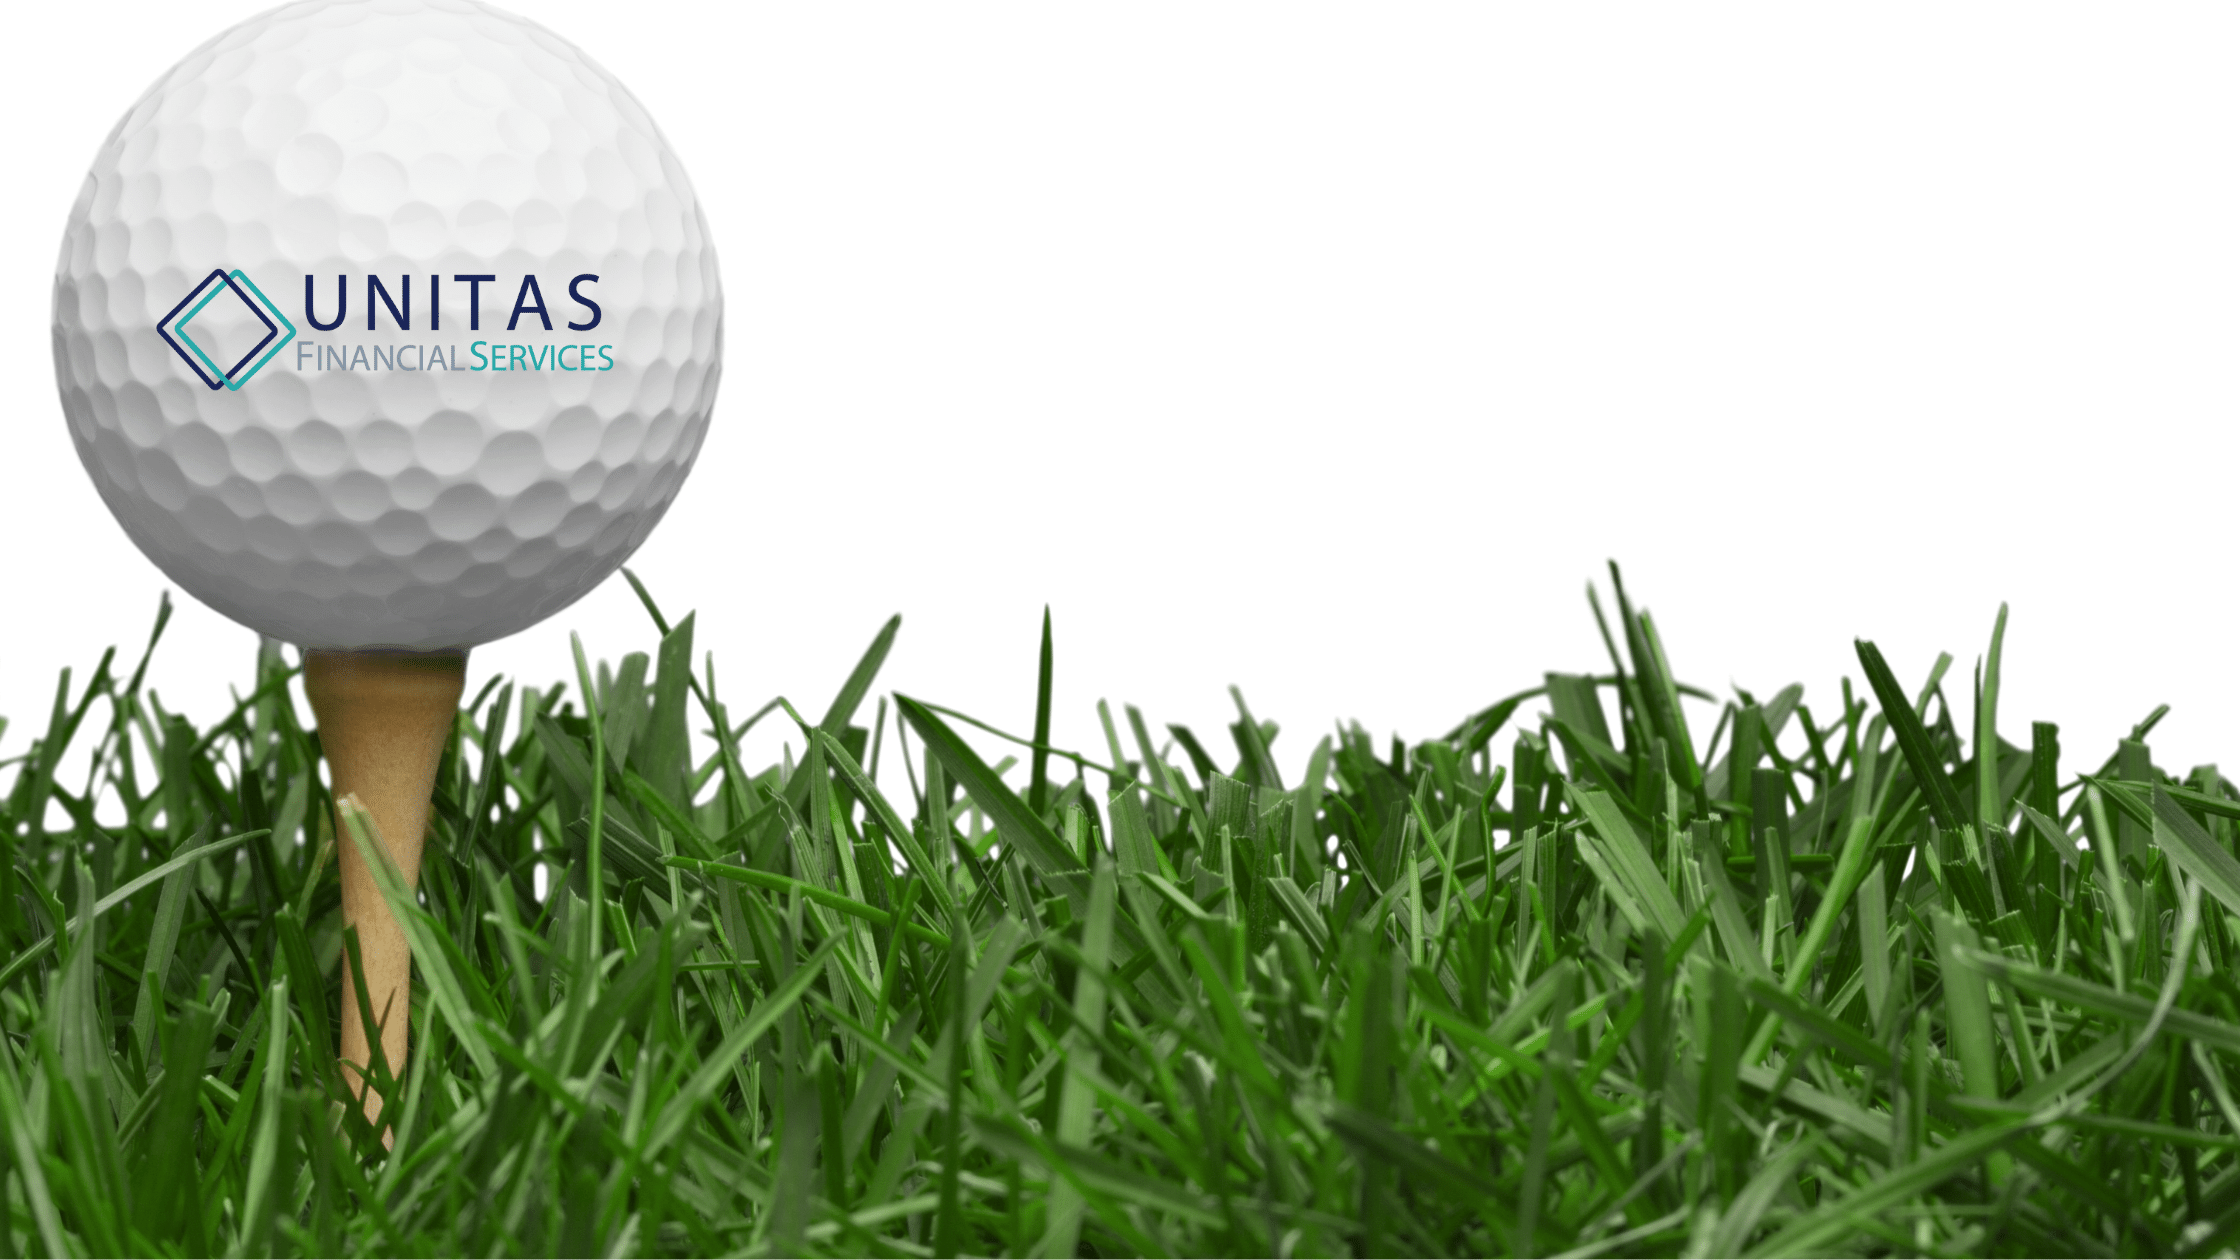 wcms golf event Unitas Financial Services 